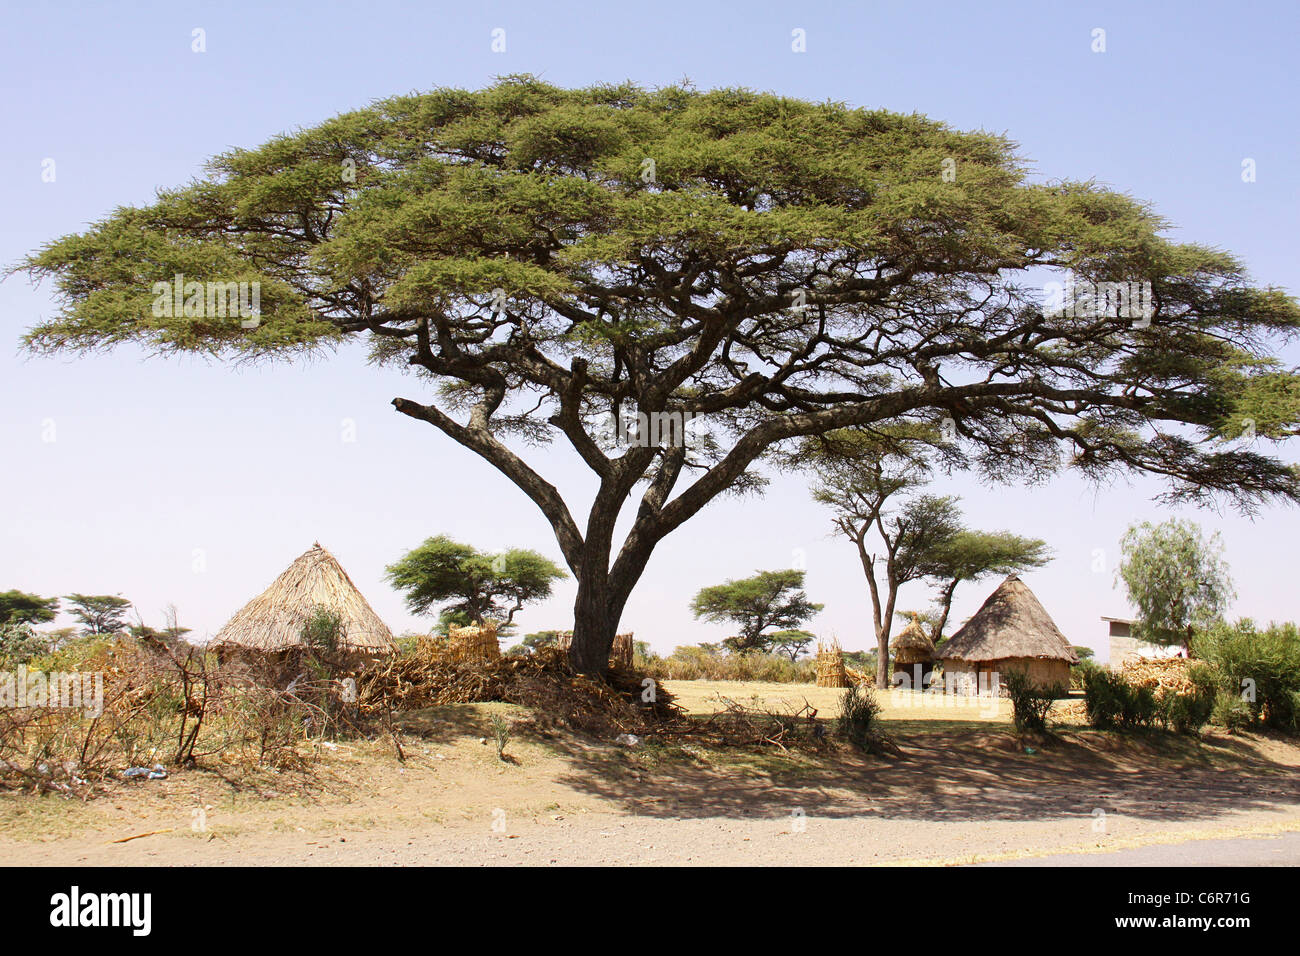 Einen großen, hohen Akazienbaum mit einem weit verbreiteten Baldachin Schattierung den Boden in der Nähe von urigen Hütten in Äthiopien Stockfoto